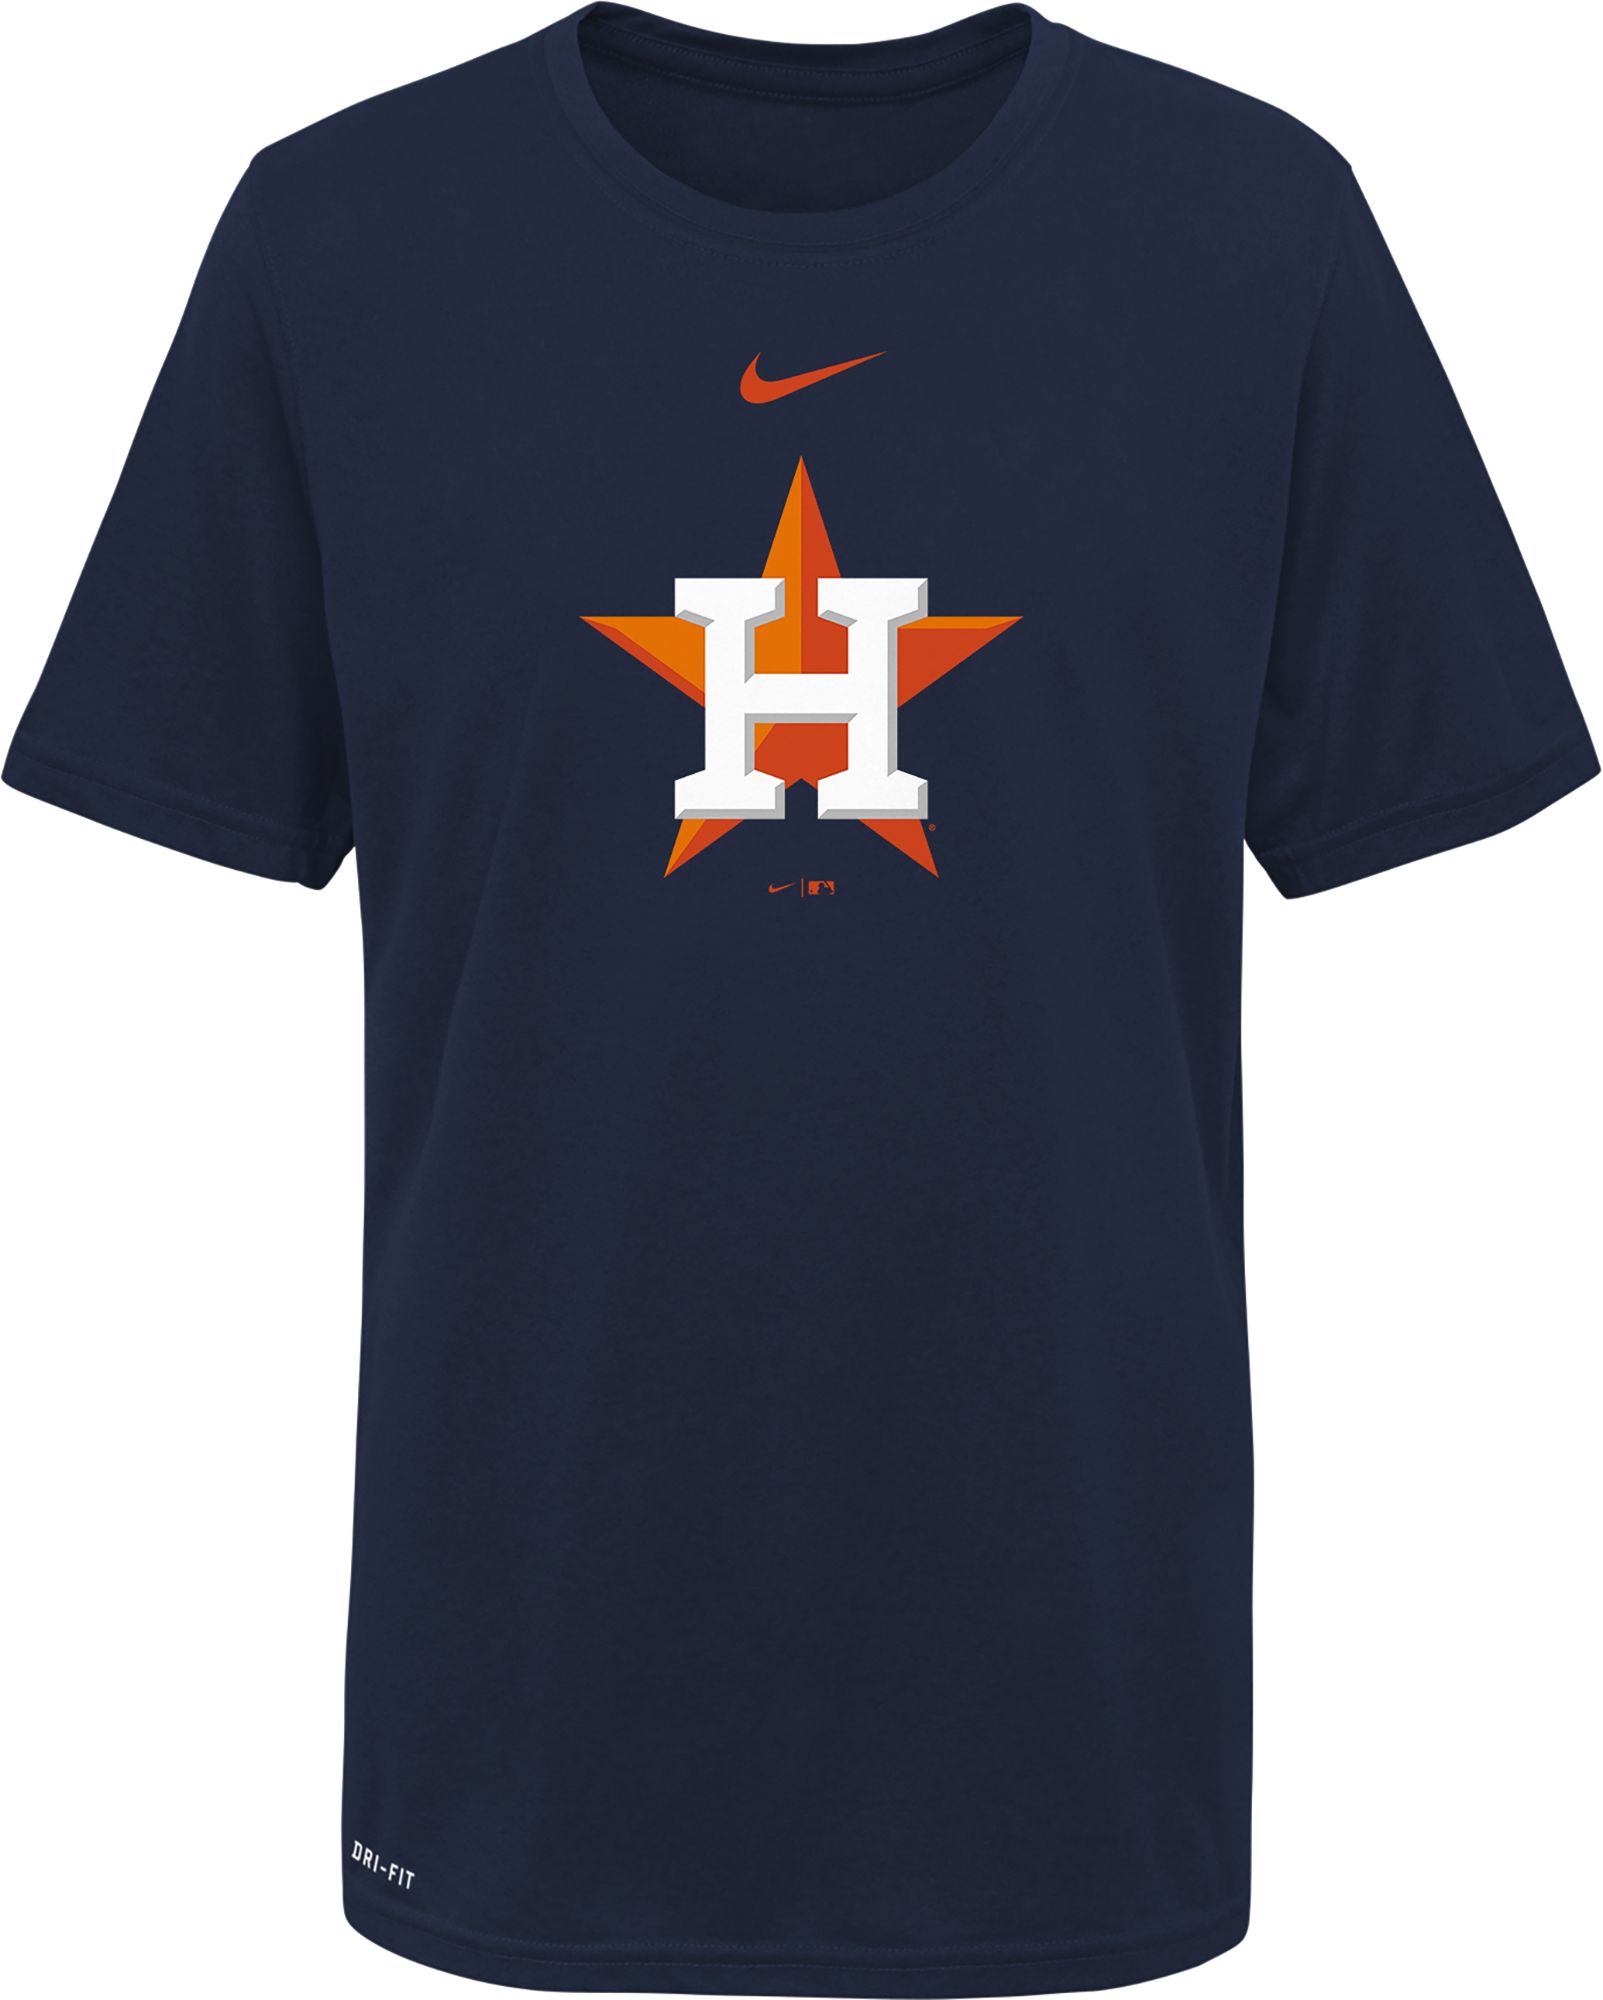 Nike / Youth Boys' Houston Astros Navy Logo Legend T-Shirt